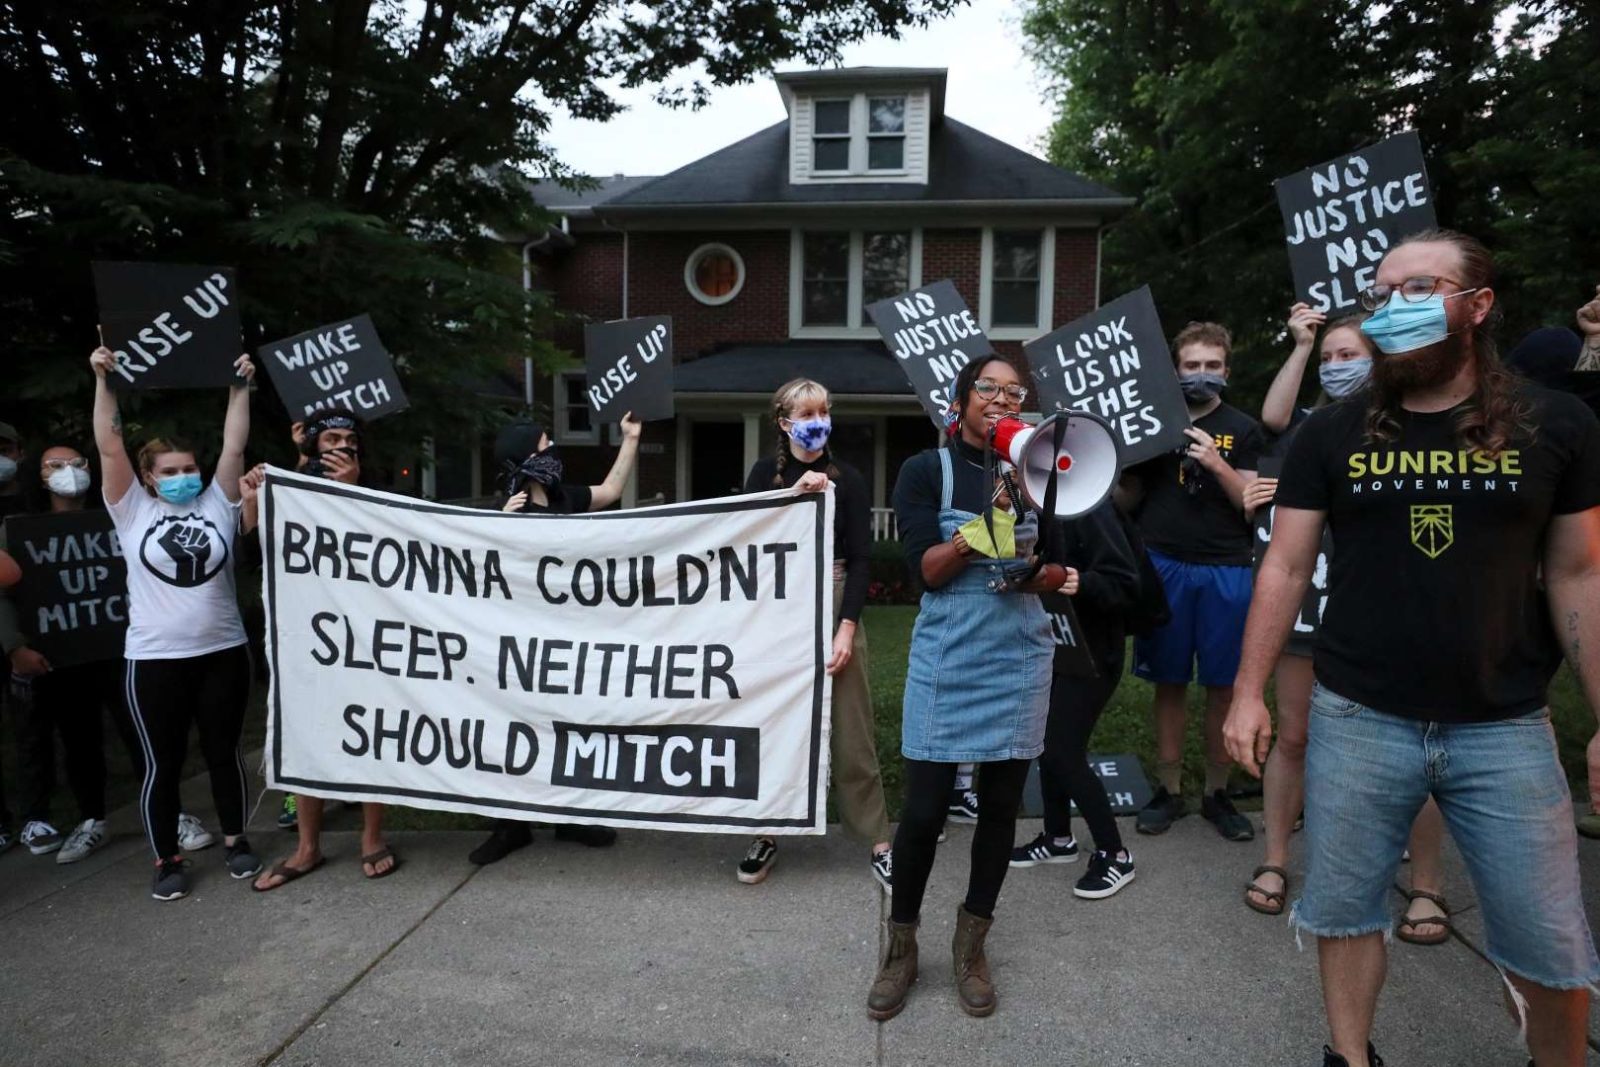 ناشط في سنرايز يتحدث في مكبر صوت بينما يقف زملائه المتظاهرين أمام منزل ميتش ماكونيل في KY حاملين لافتة كبيرة كتب عليها "بريونا لا تستطيع النوم. ولا يجب على ميتش".